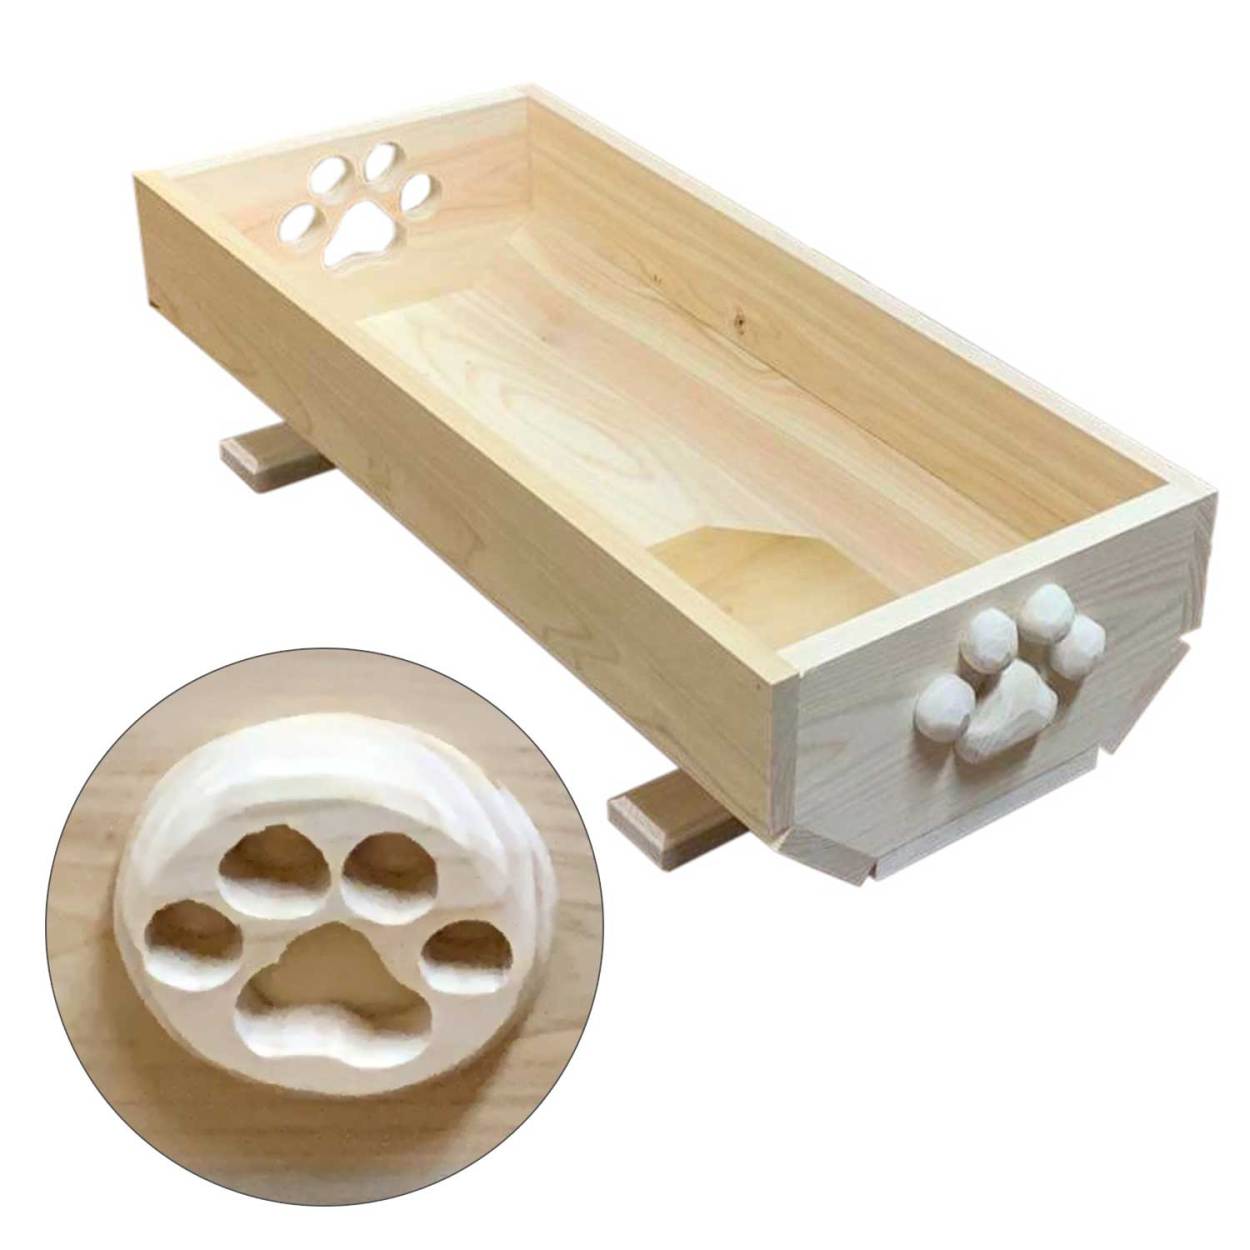 猫のベッド 夏用 肉球 おしゃれ 奈良吉野桧 猫プランター かわいい肉球付き (小) 木製  エコ やさしい